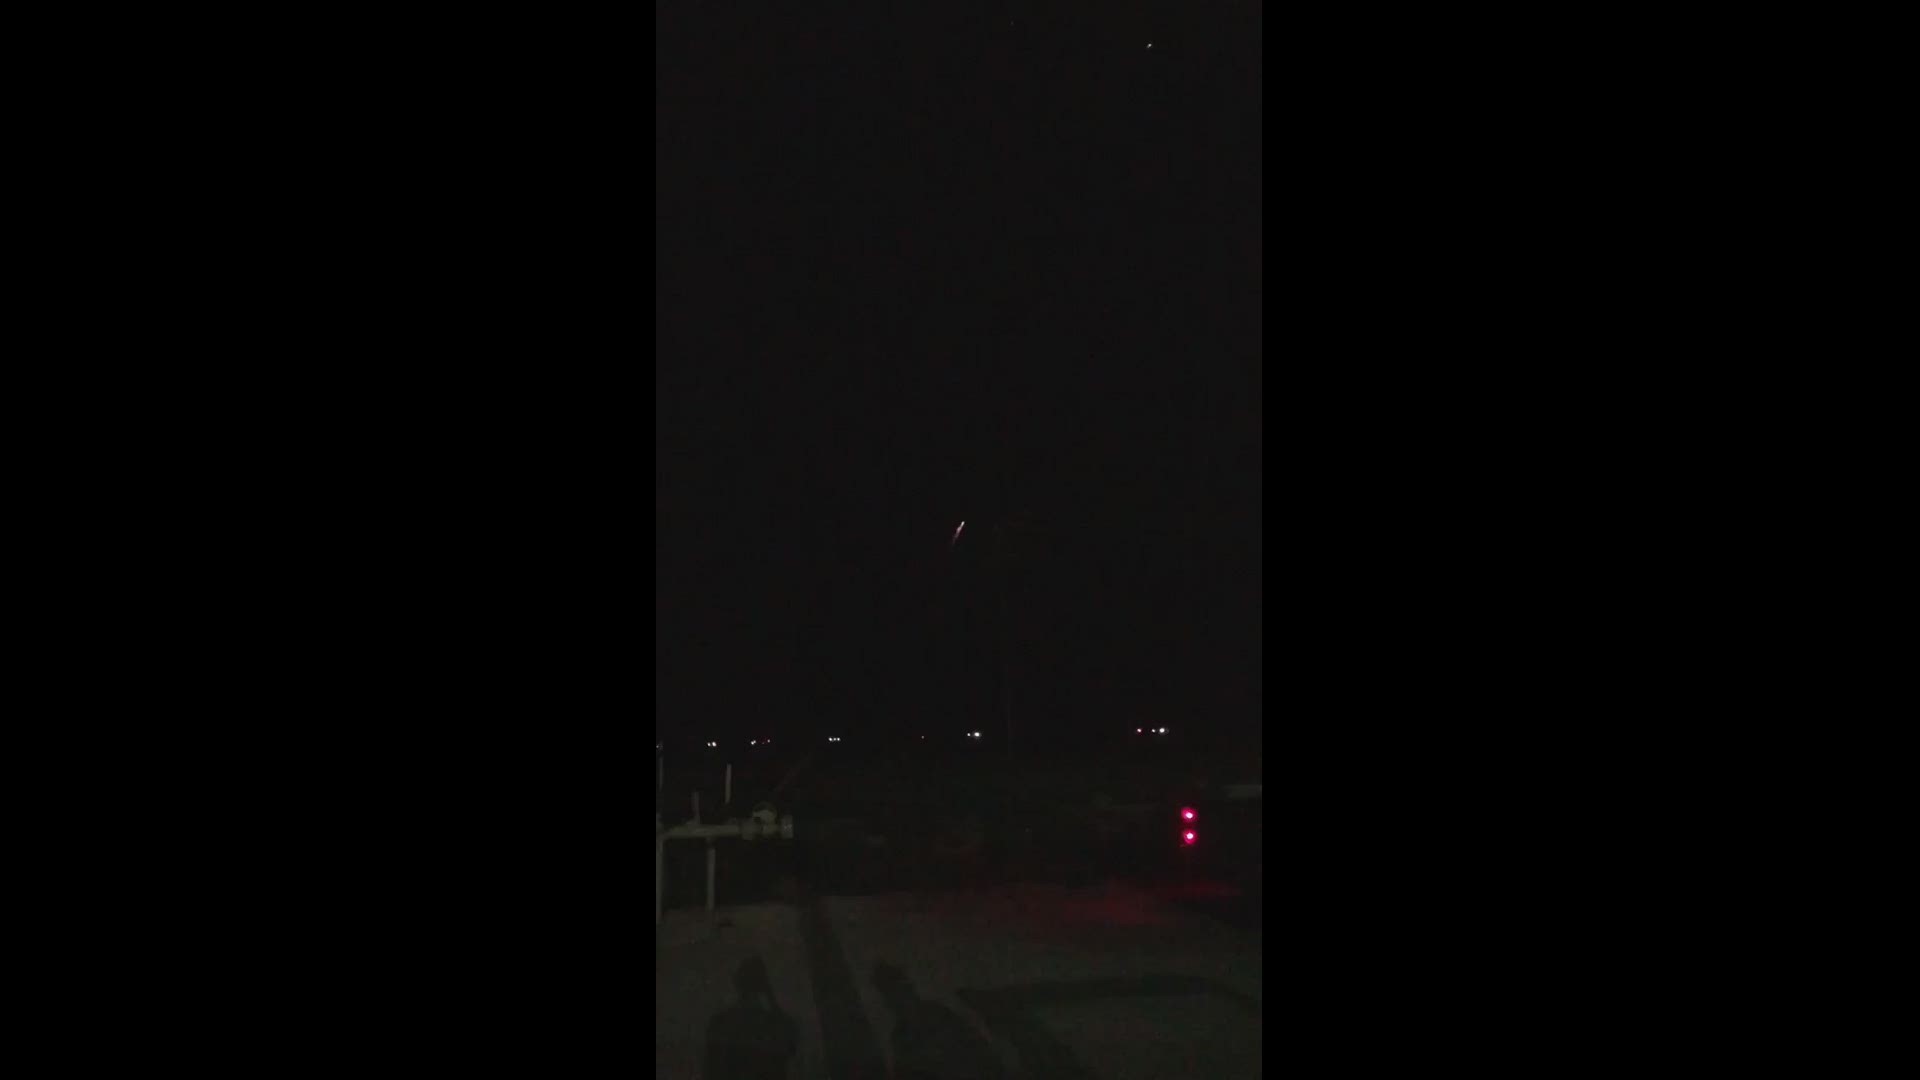 Brandi Batmann captures rocket debris breaking up over West Texas